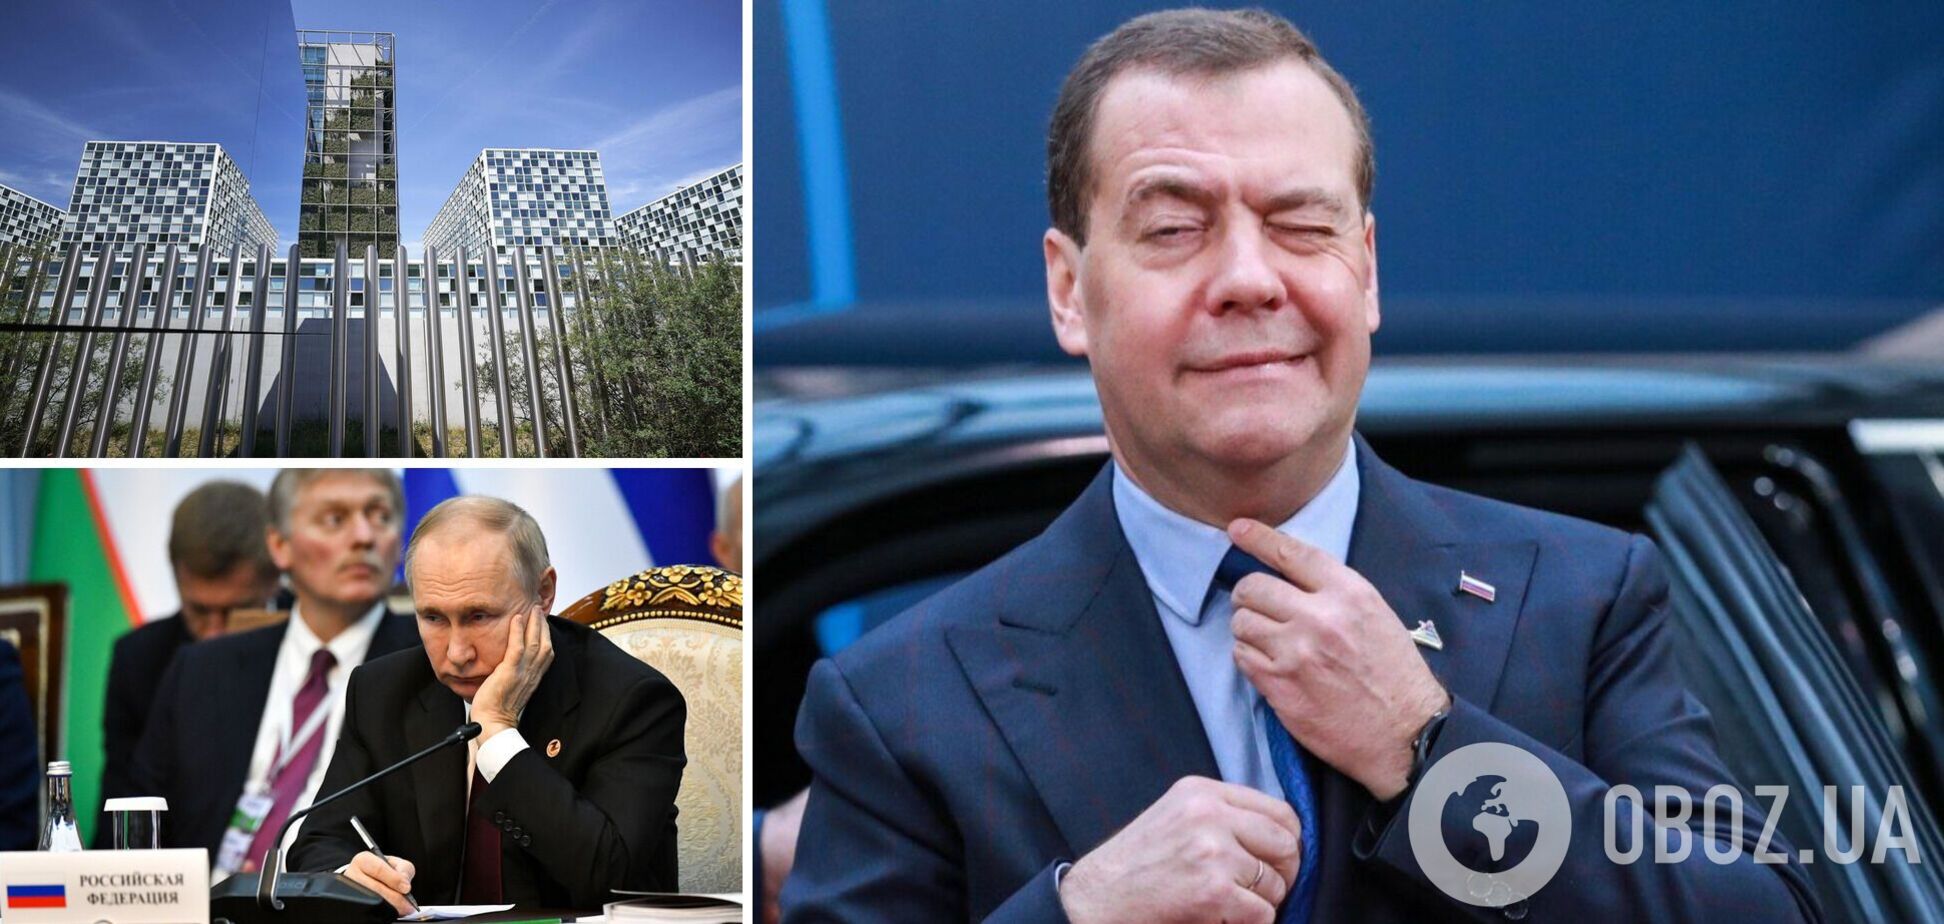 Медведев пригрозил стране НАТО ракетным ударом